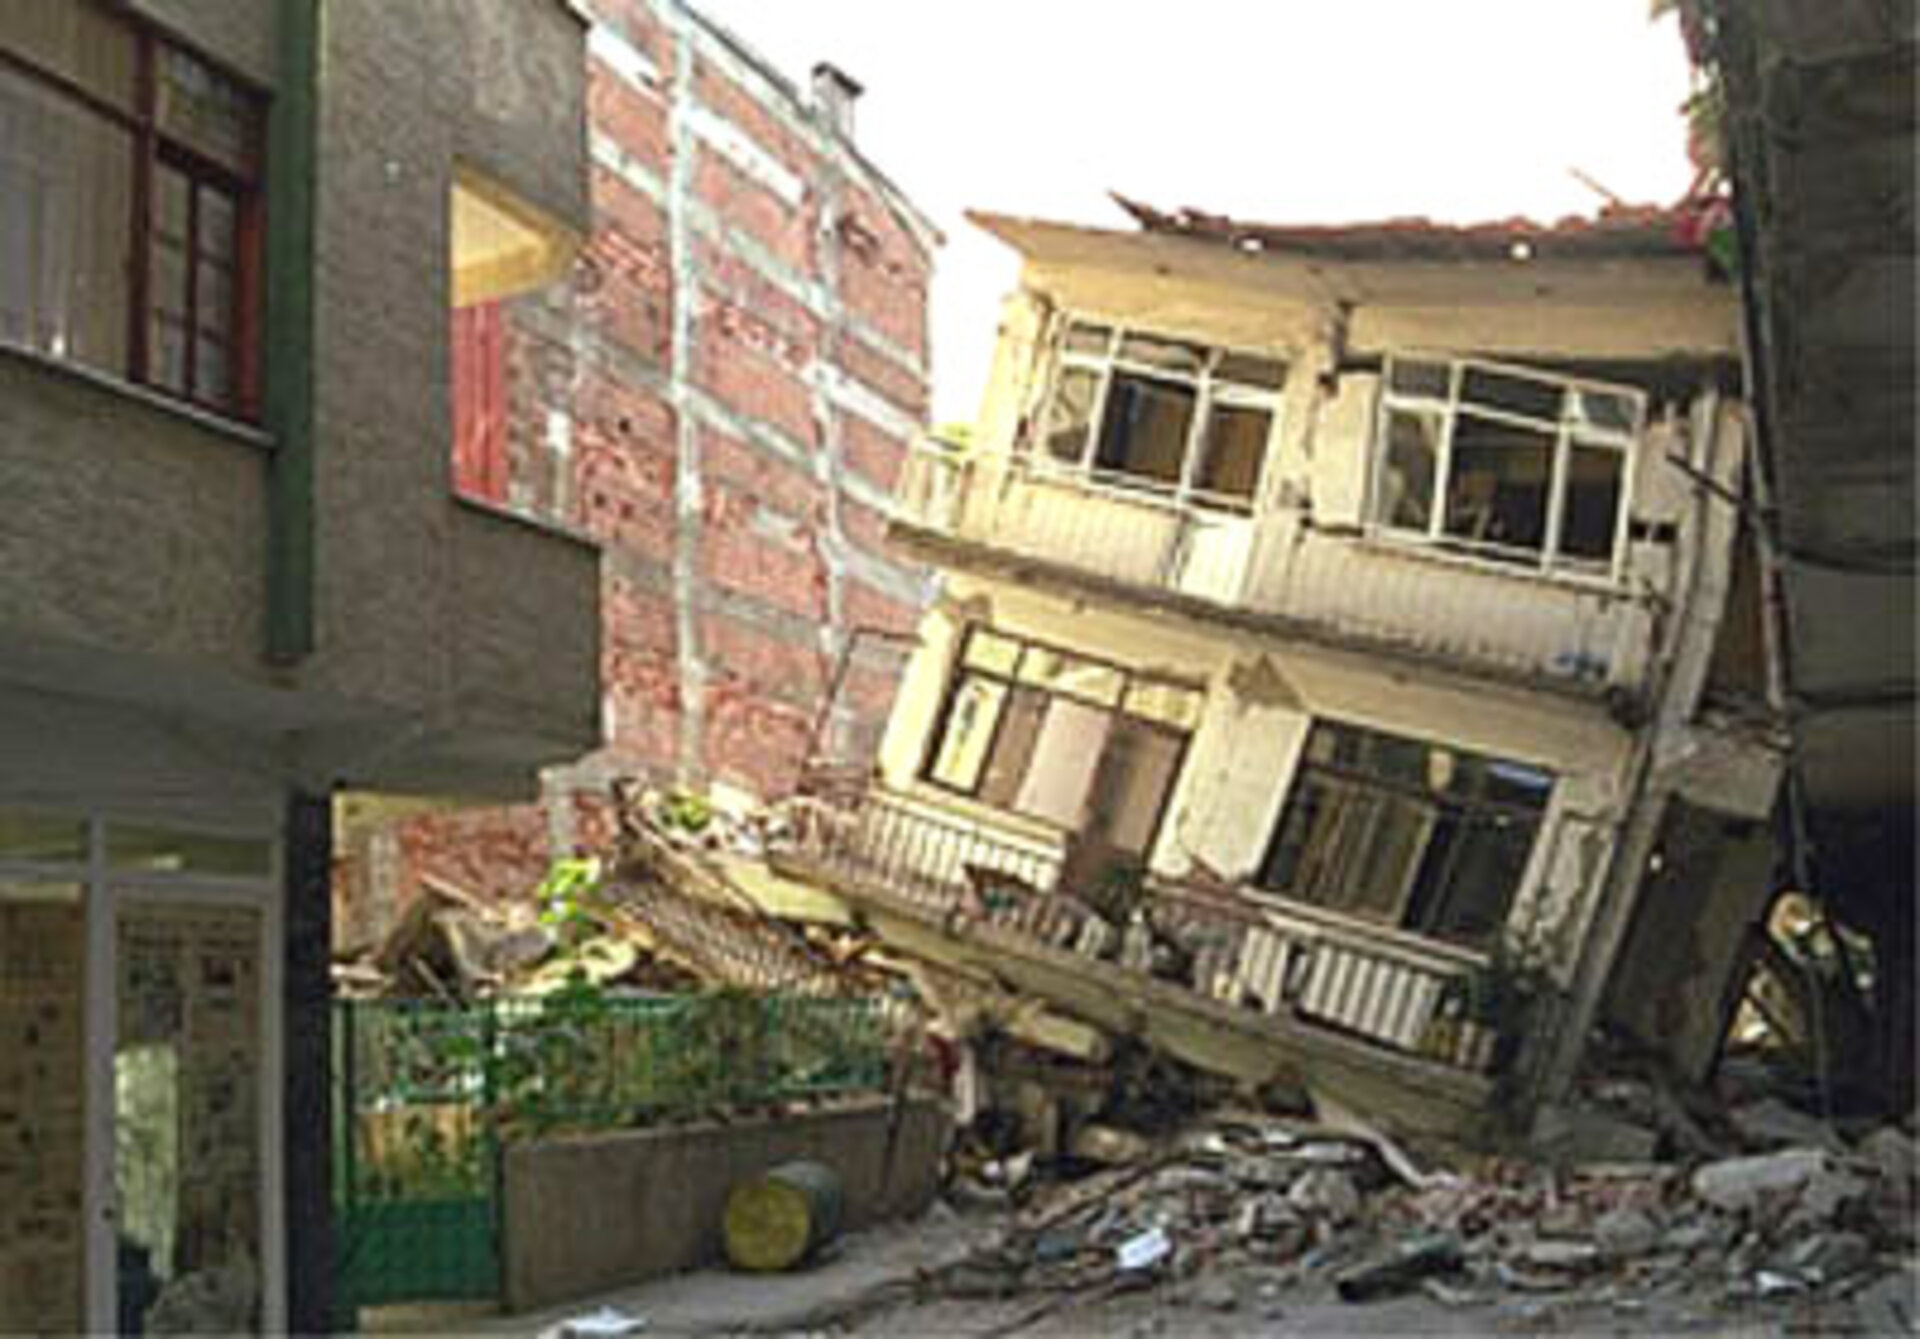 Effeti di un terremoto: edifici e infrastrutture abbattuti